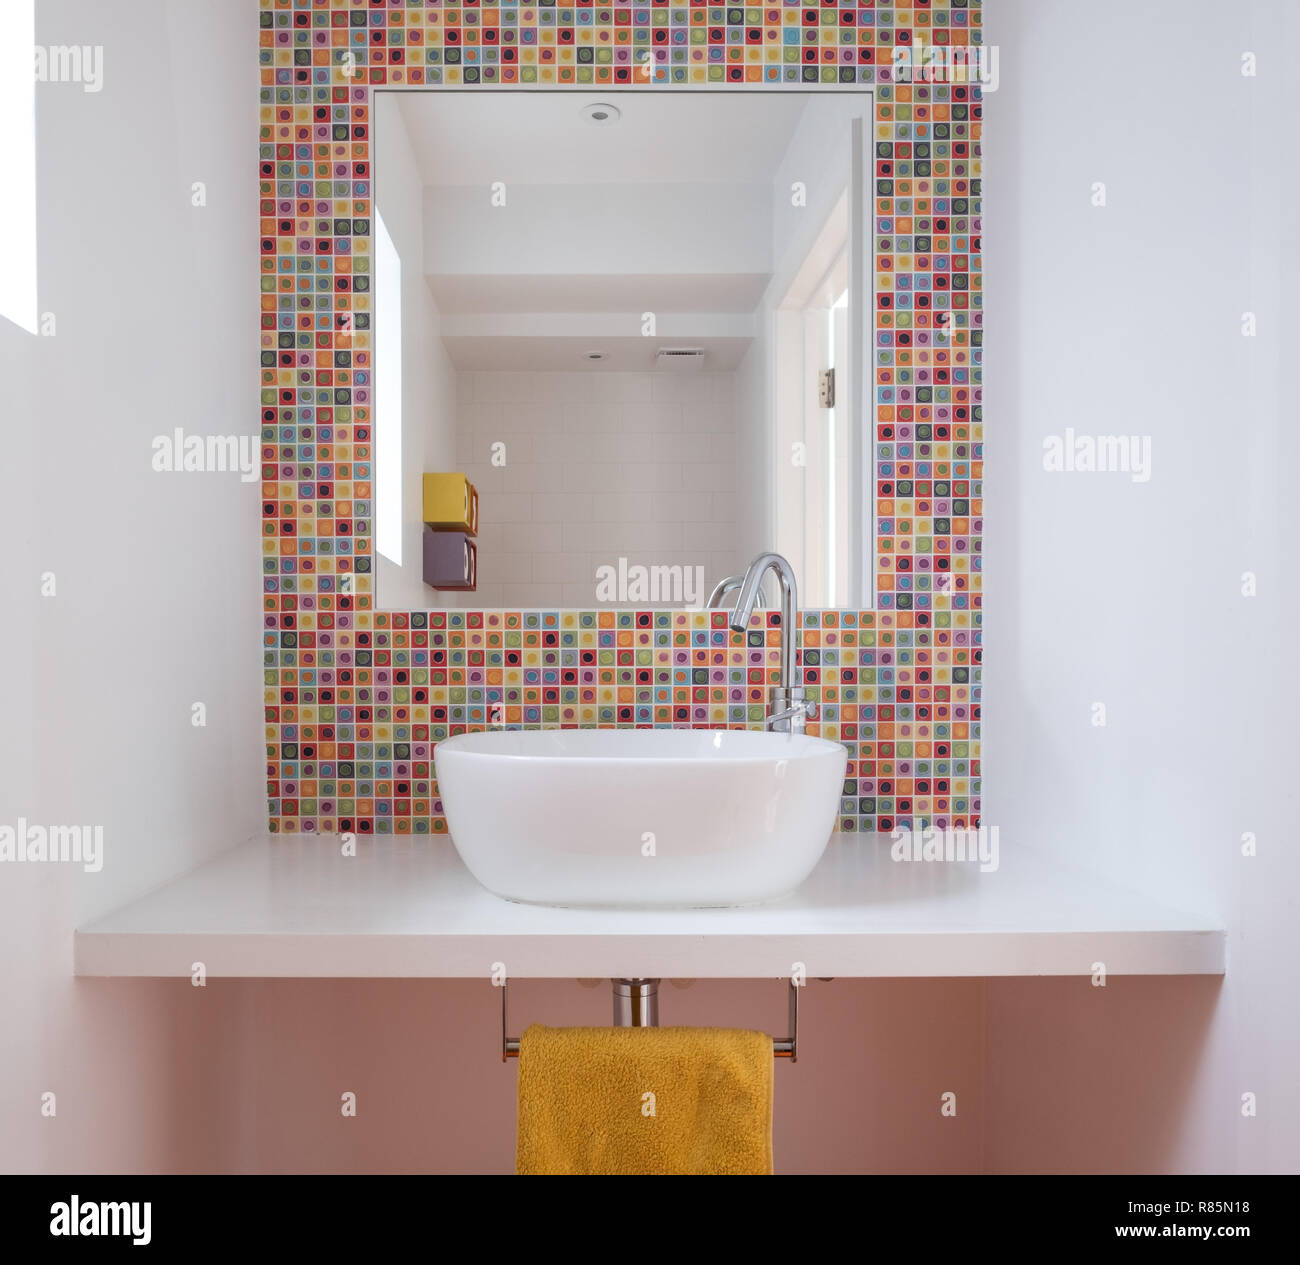 Modernes Badezimmer mit Waschbecken, bunten Glas Mosaikfliesen, lackierte  MDF Regal und Spiegel Einfügung in die Fliesen Stockfotografie - Alamy